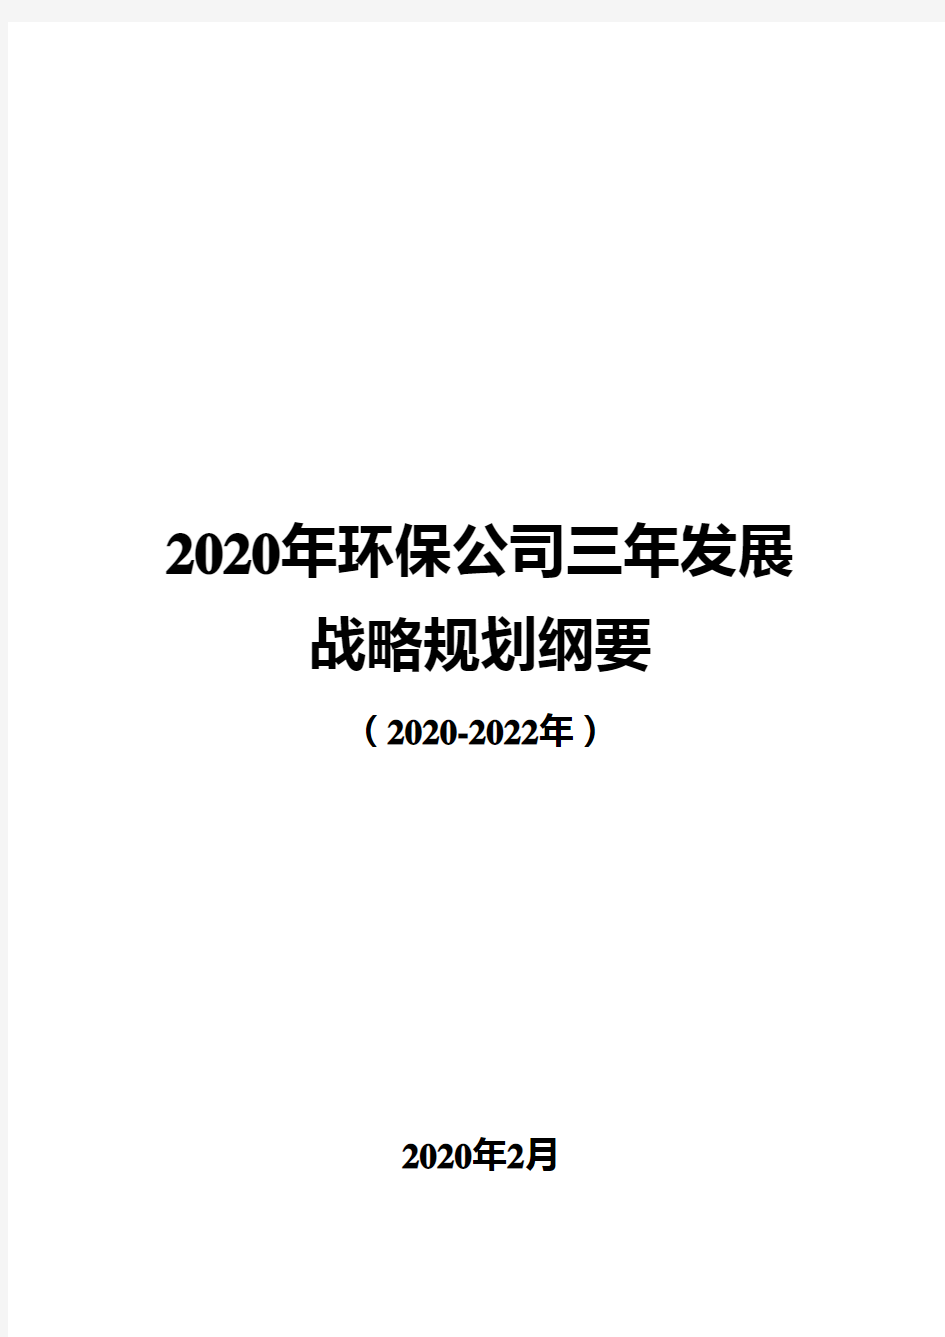 2020年环保公司三年发展战略规划纲要(2020-2022年)